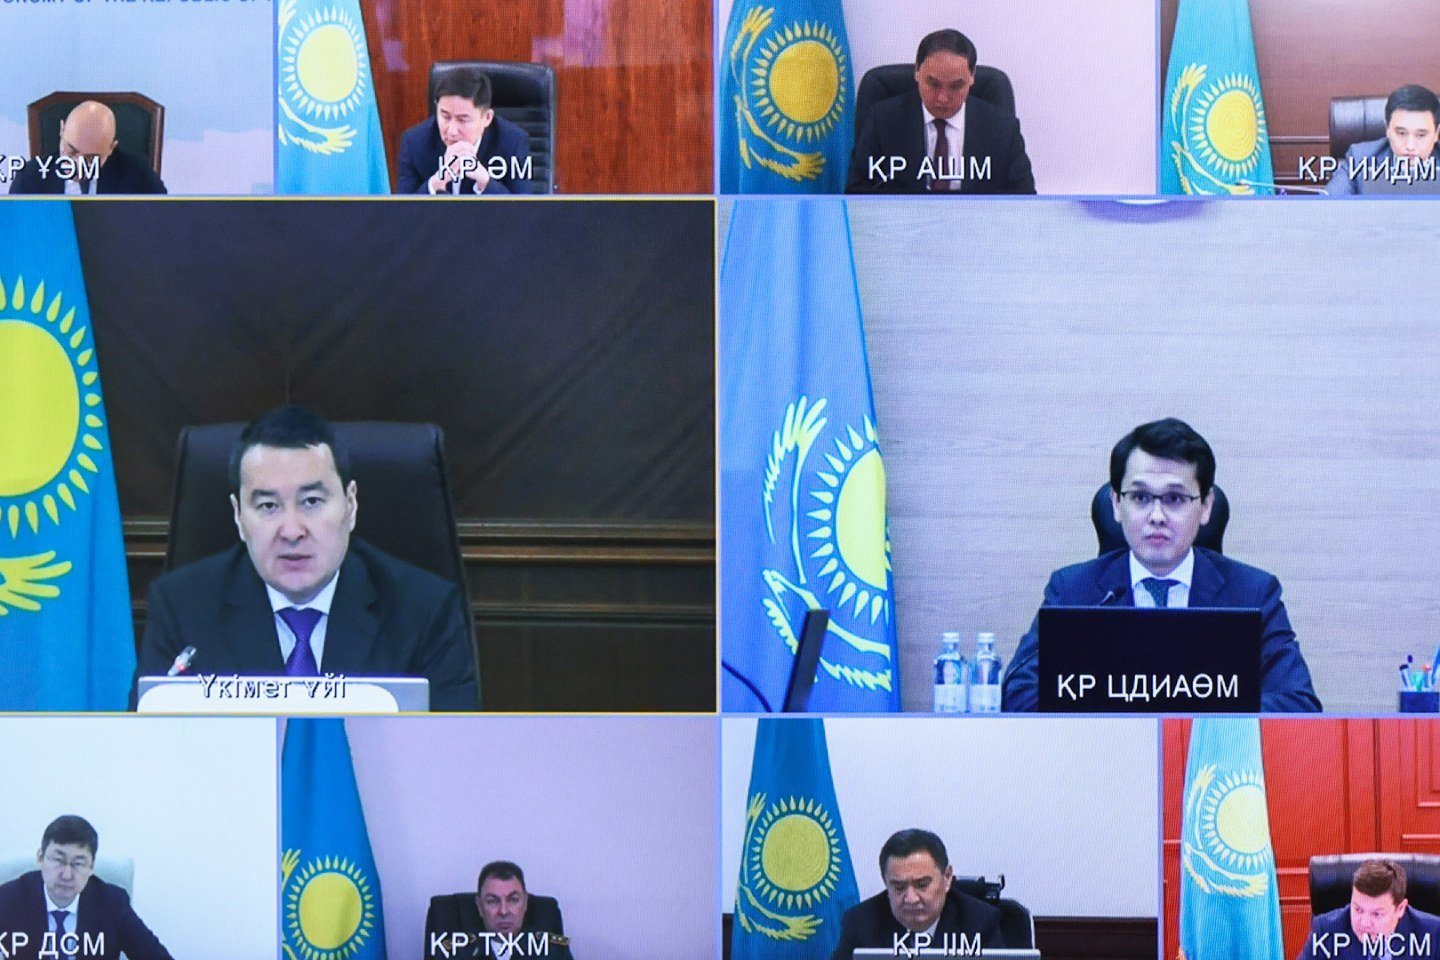 Новости Казахстана / Общество в Казахстане / Онлайн-очереди: цифровые инициативы госорганов обсудили в Правительстве РК